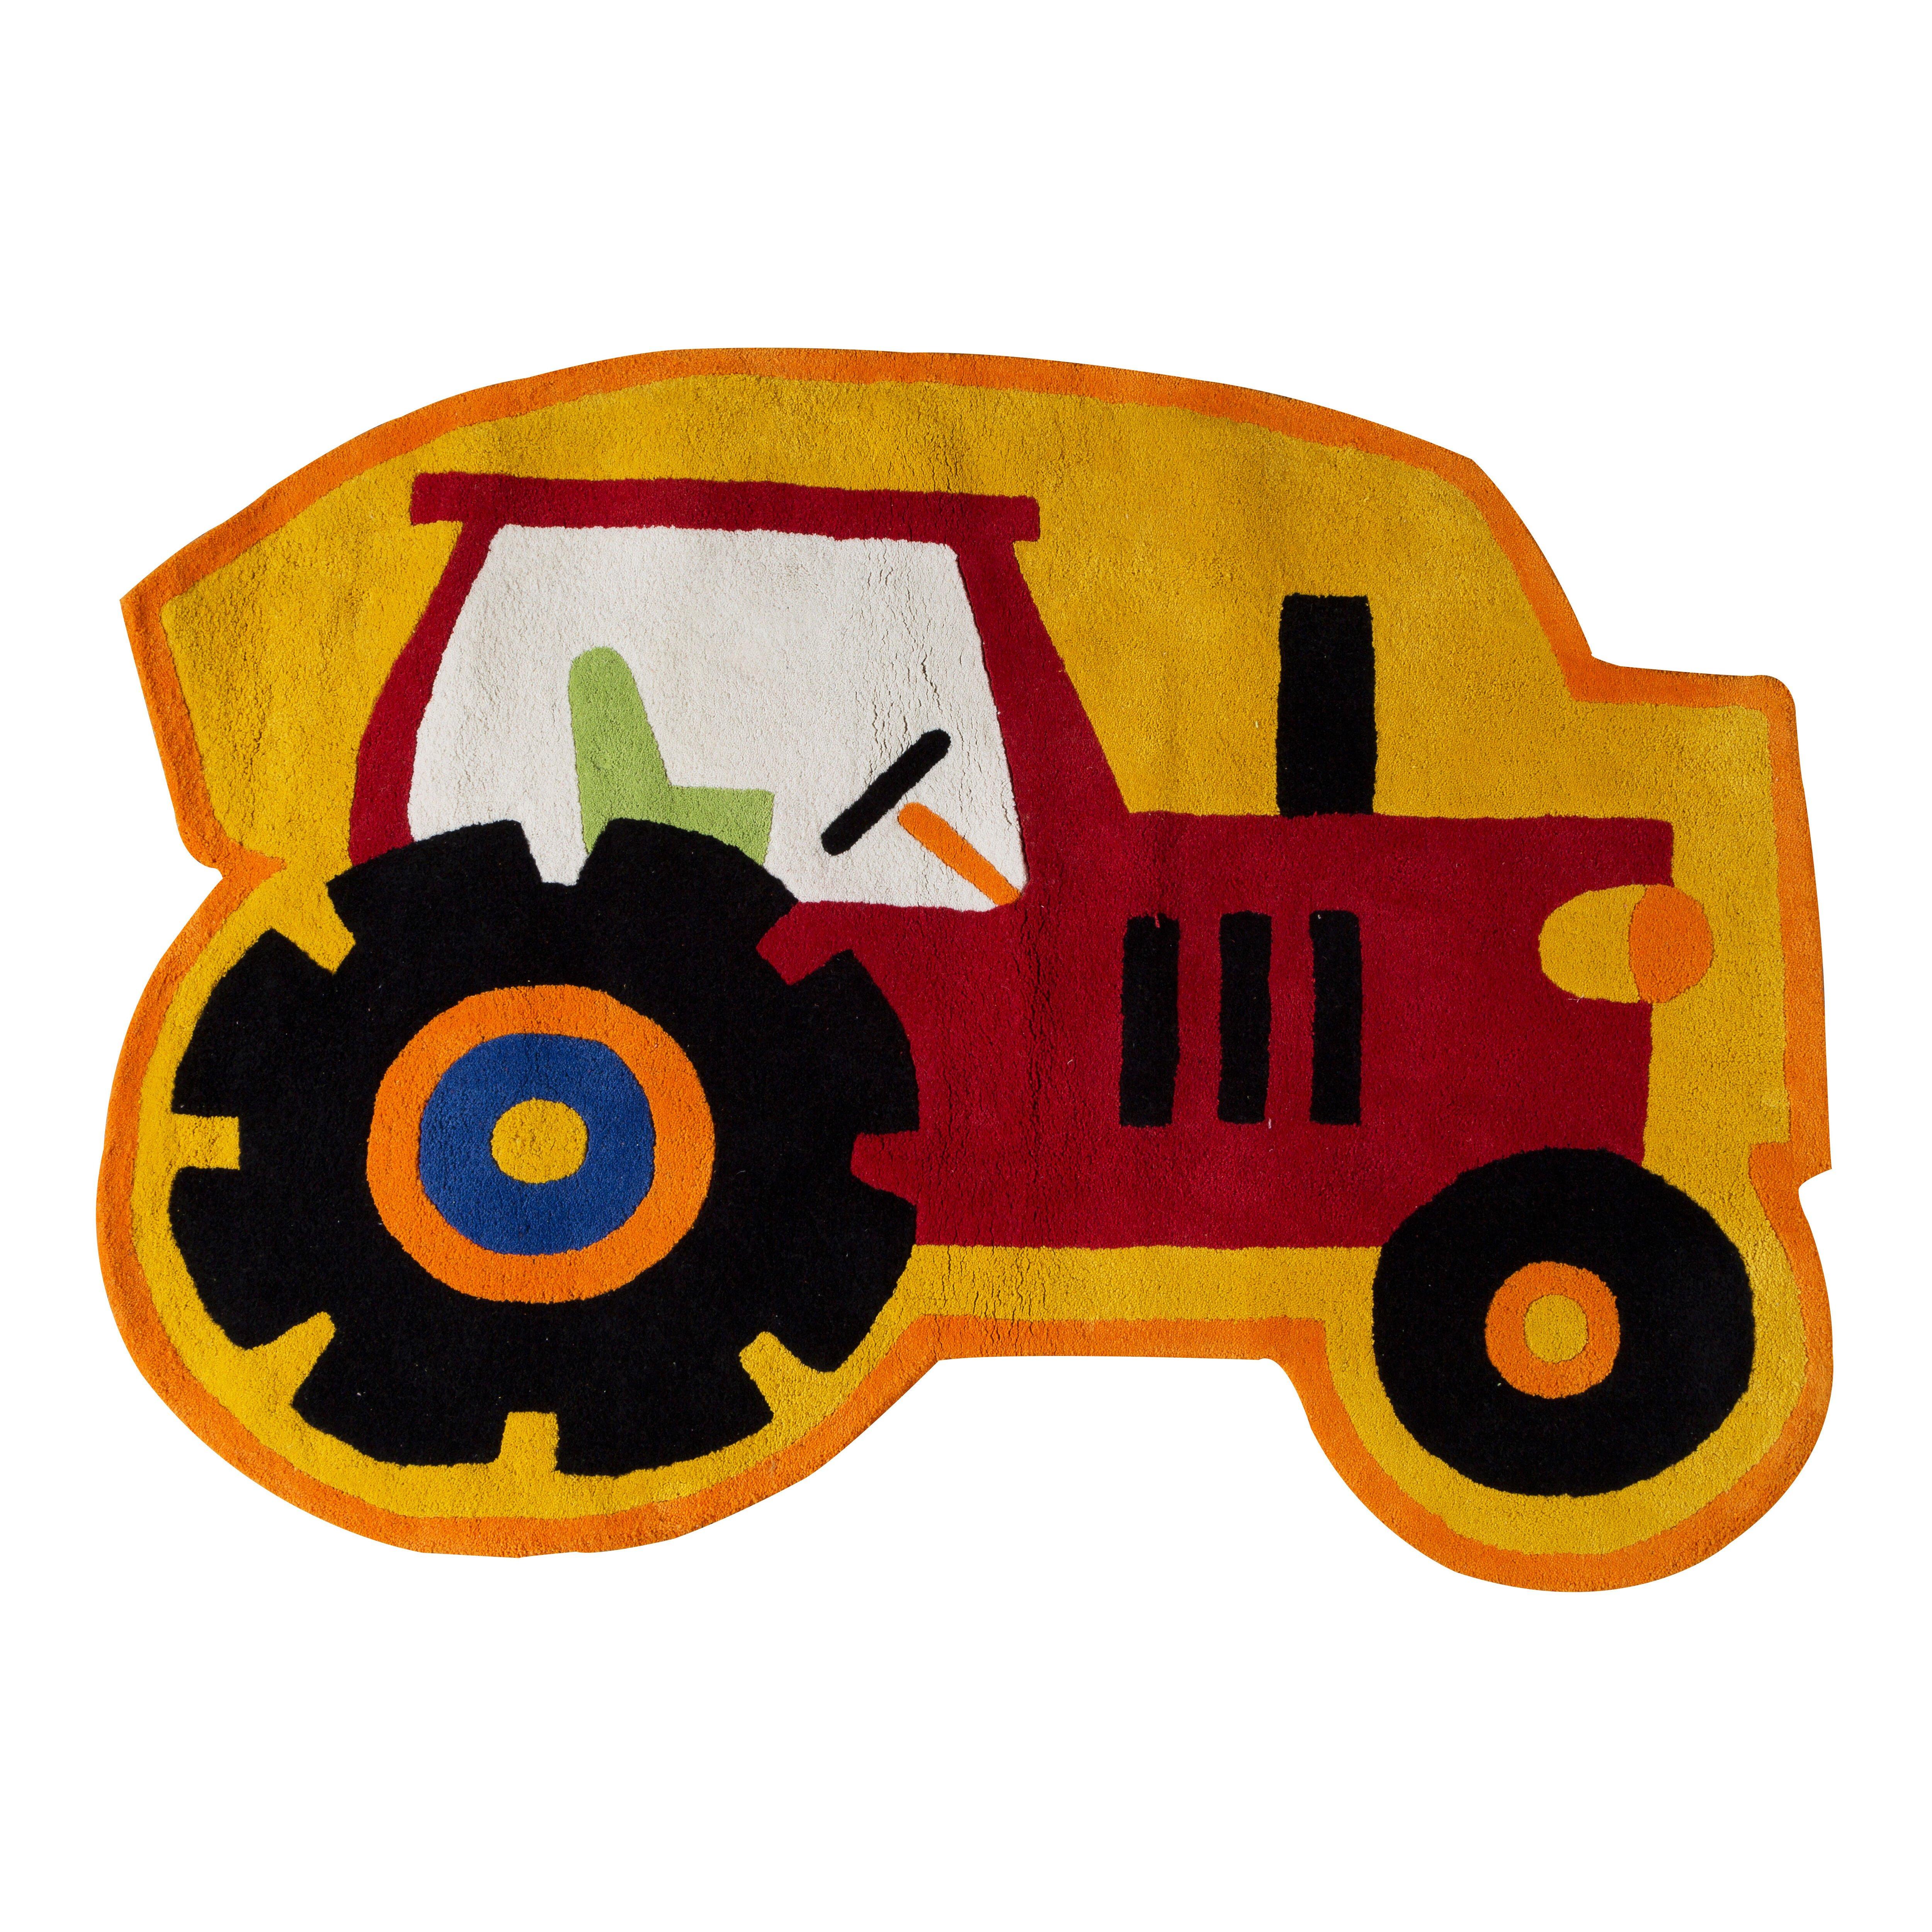 Kids Tractor Rug